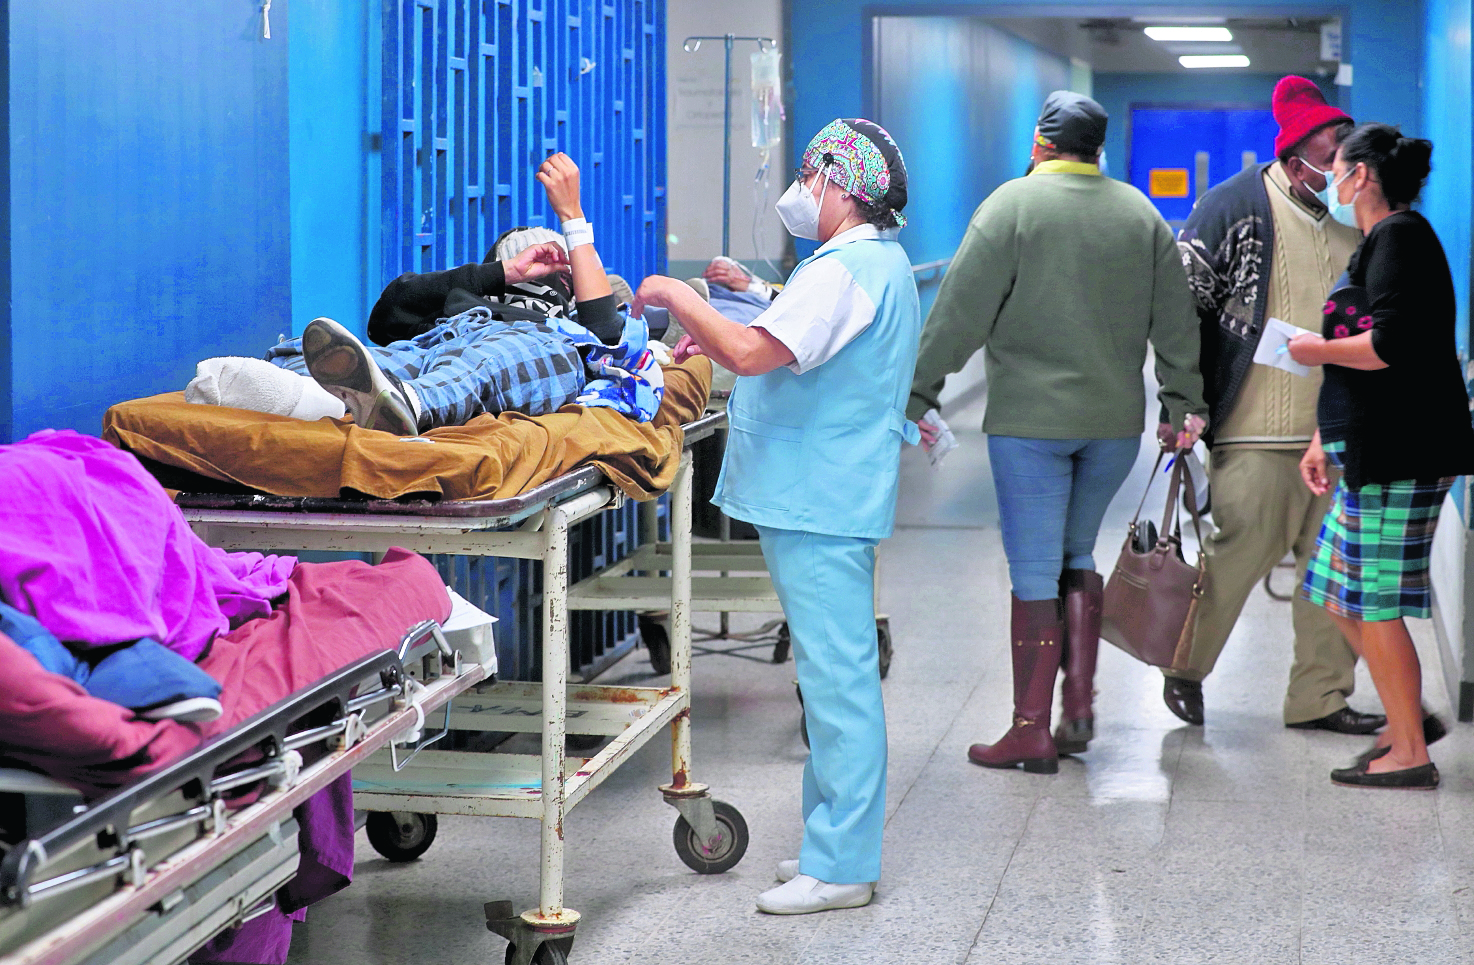 Recorrido en las instalaciones del Hospital San Juan De Dios donde donde se observan personal trabajando y curando a pacientes.

Fotografía: Erick Avila.                      14/02/2022